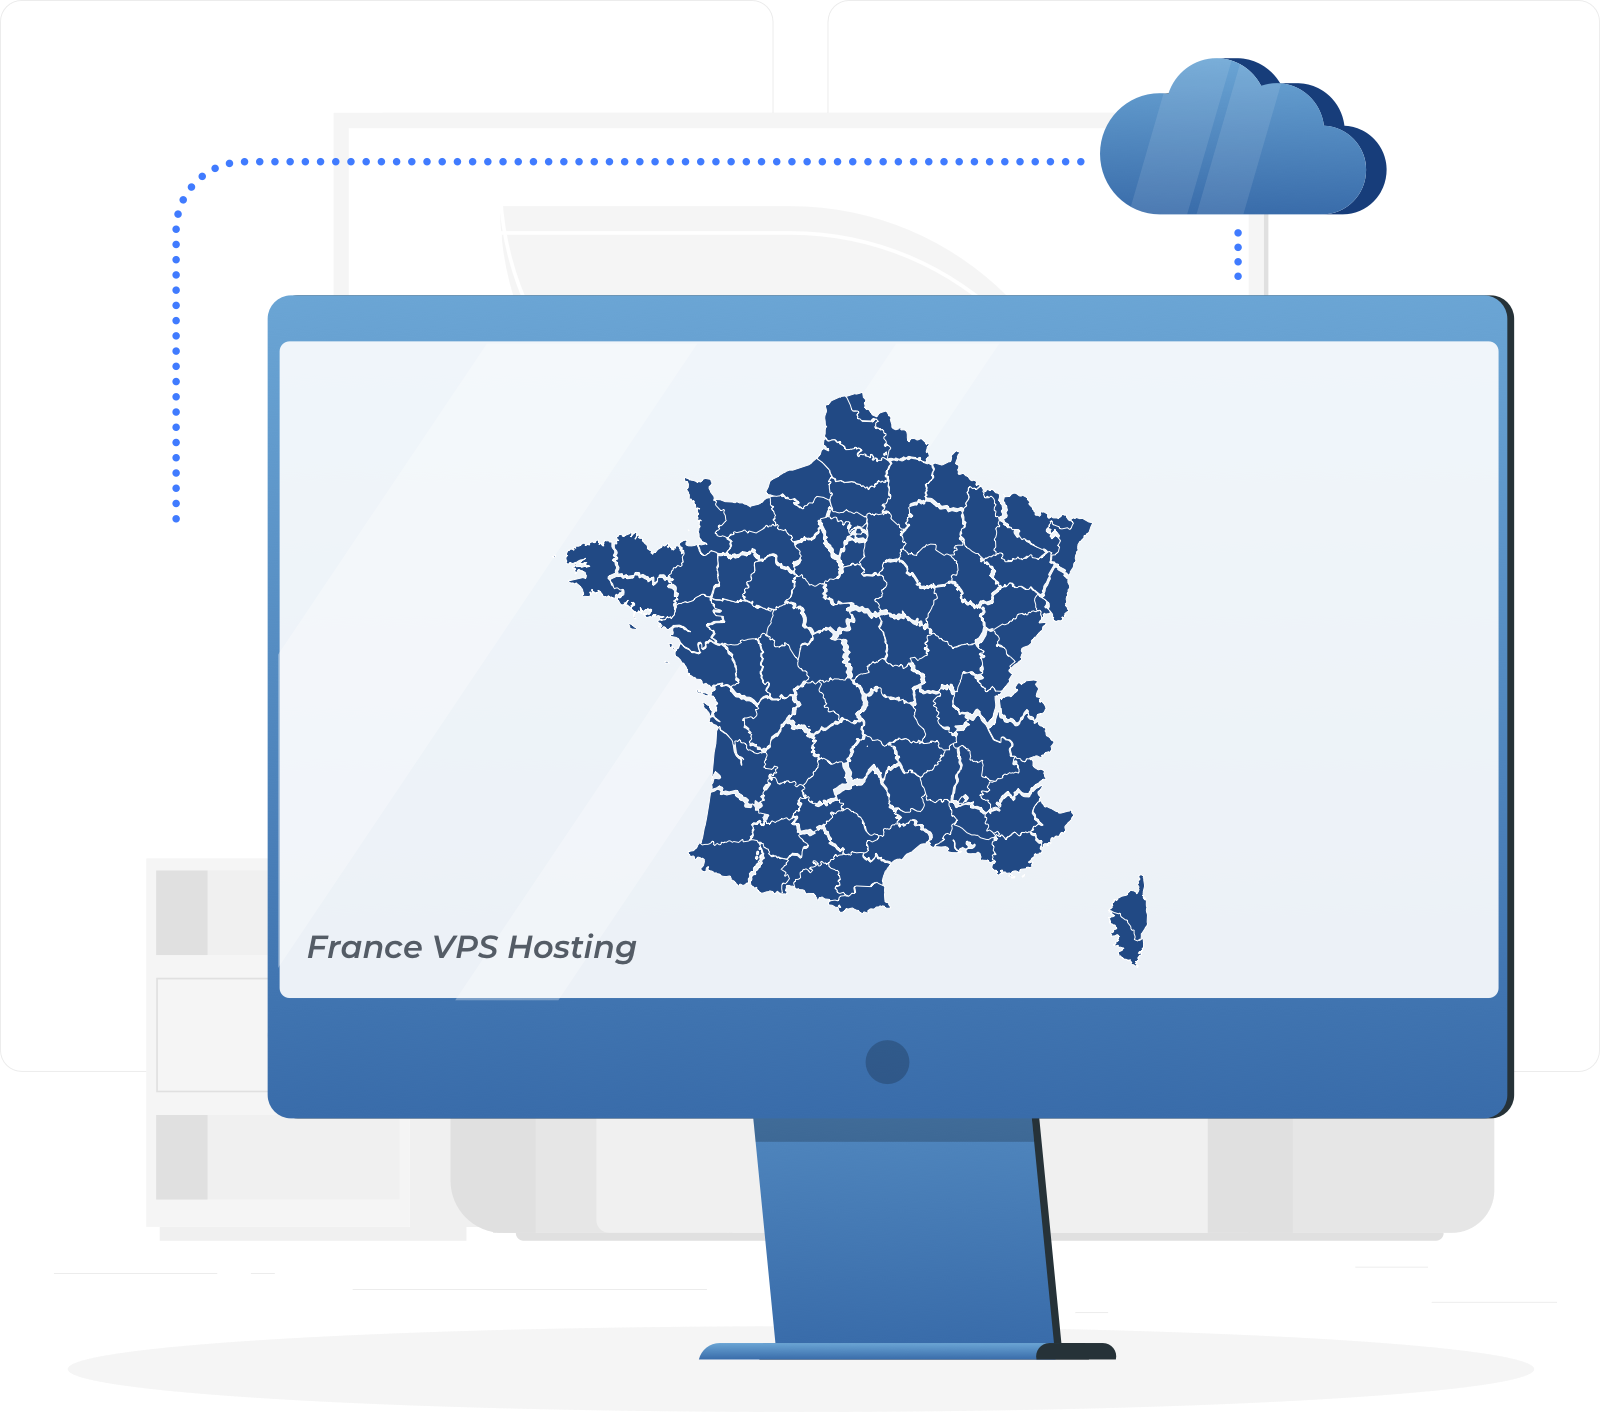 法国 VPS，和高利用率的云服务